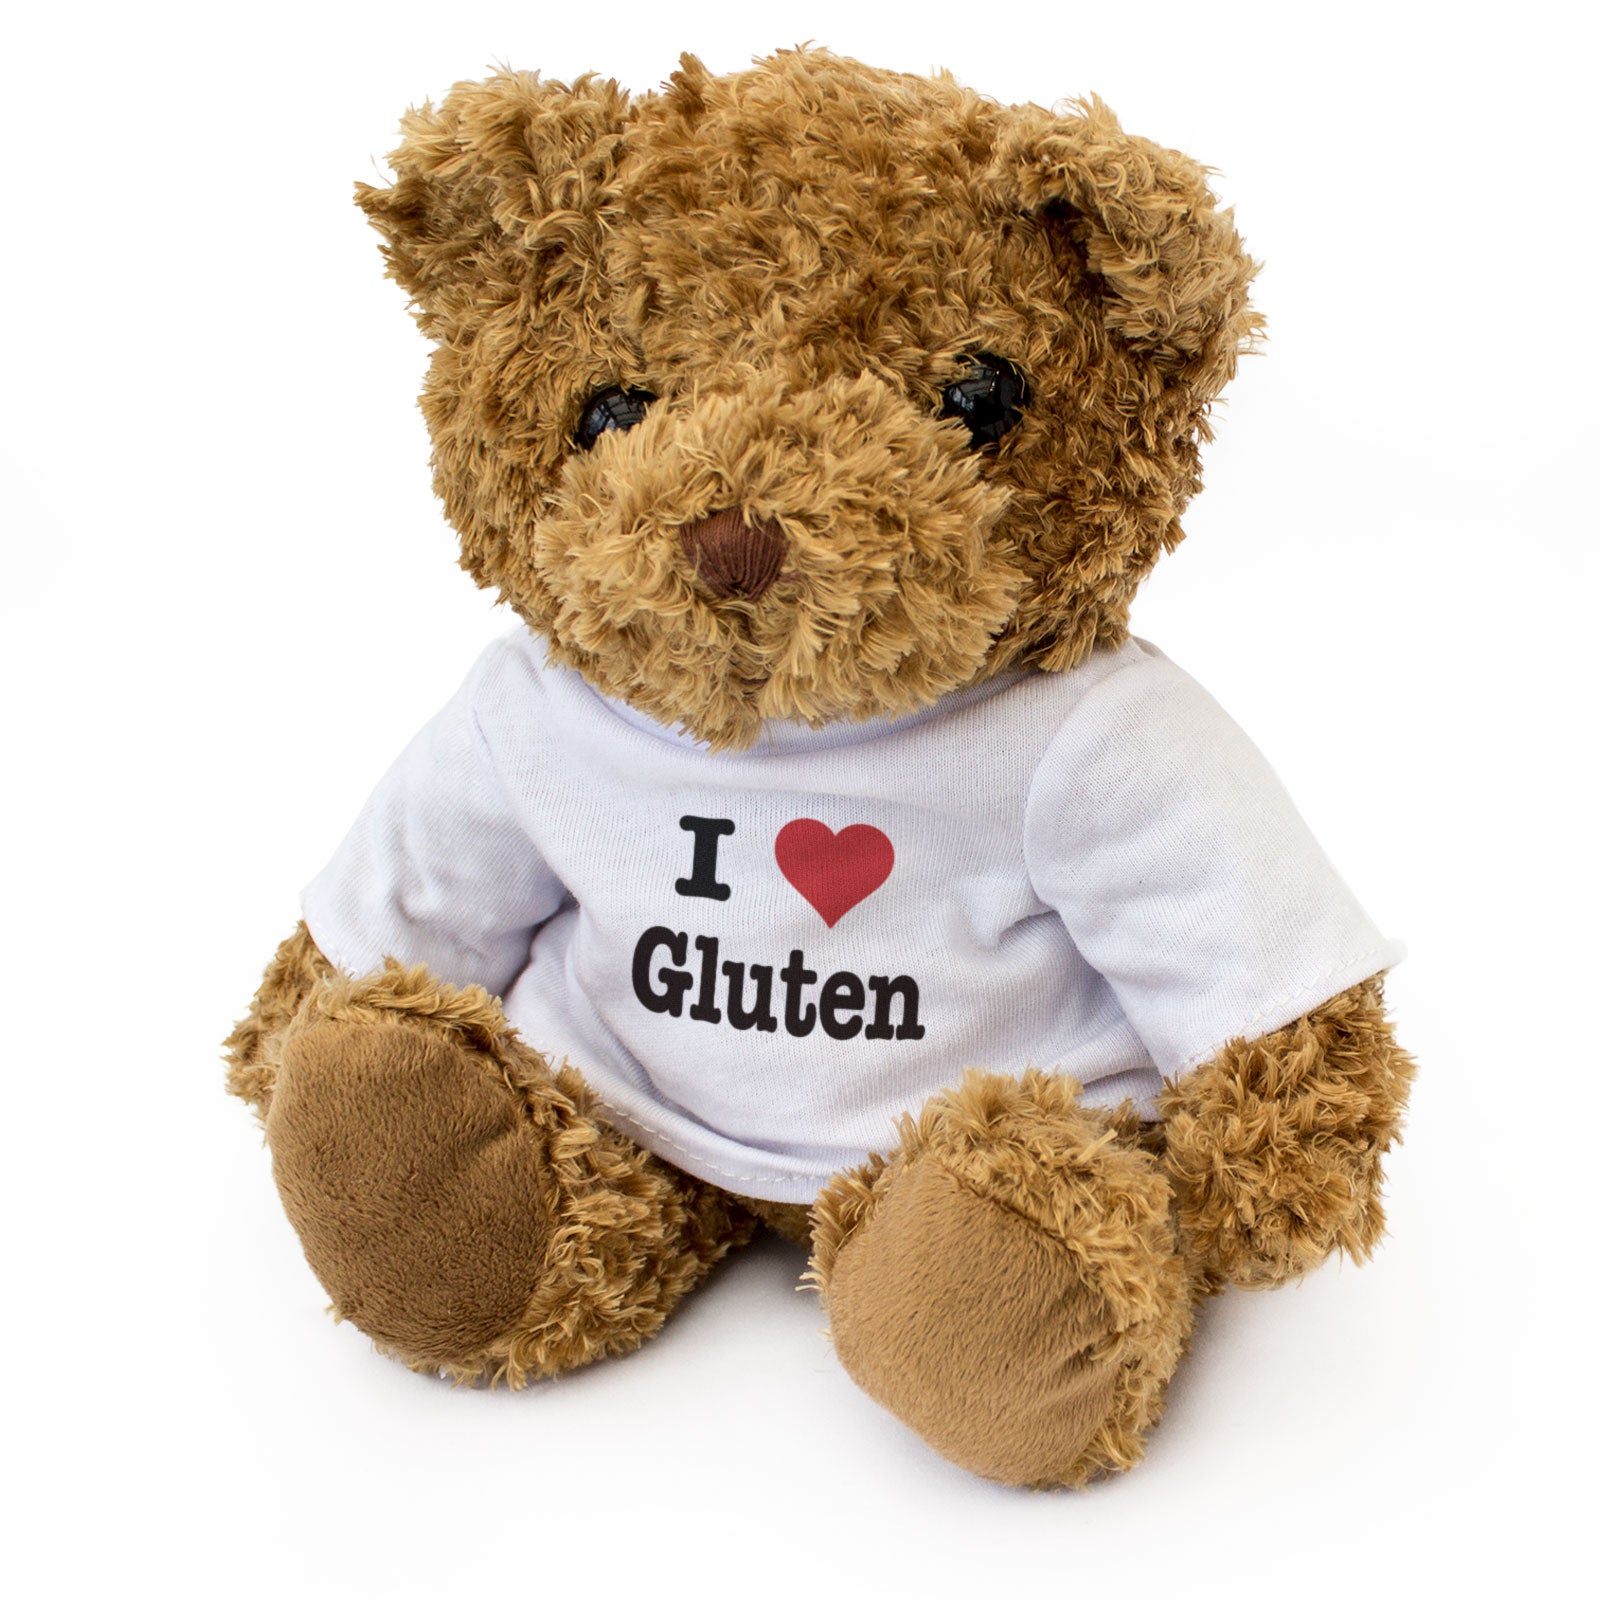 I Love Gluten - Teddy Bear